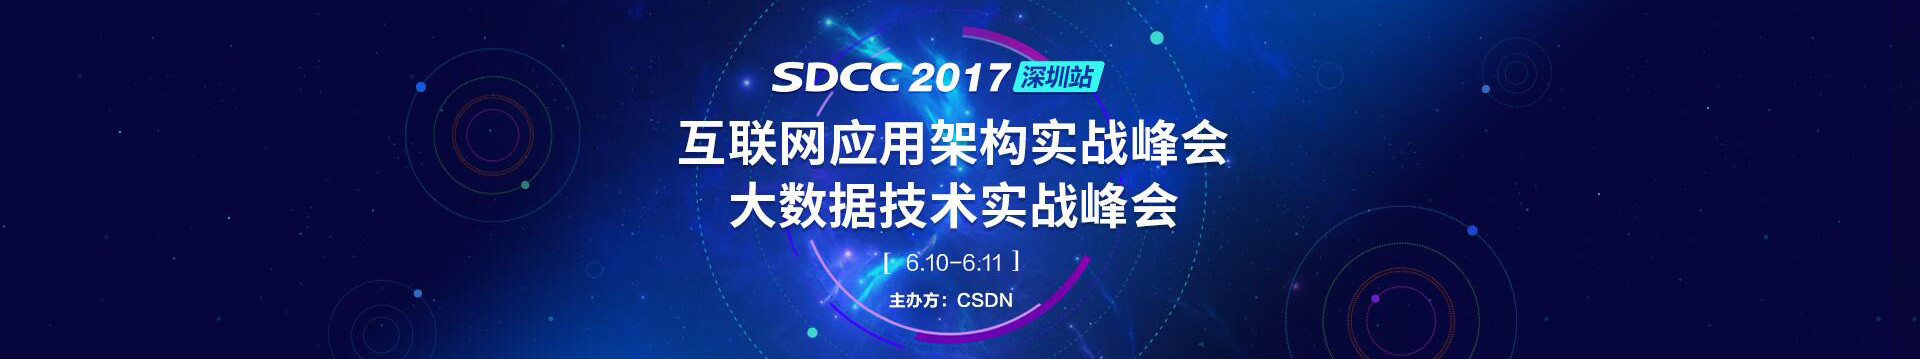 SDCC 2017·深圳站 互联网应用架构&大数据技术实战峰会